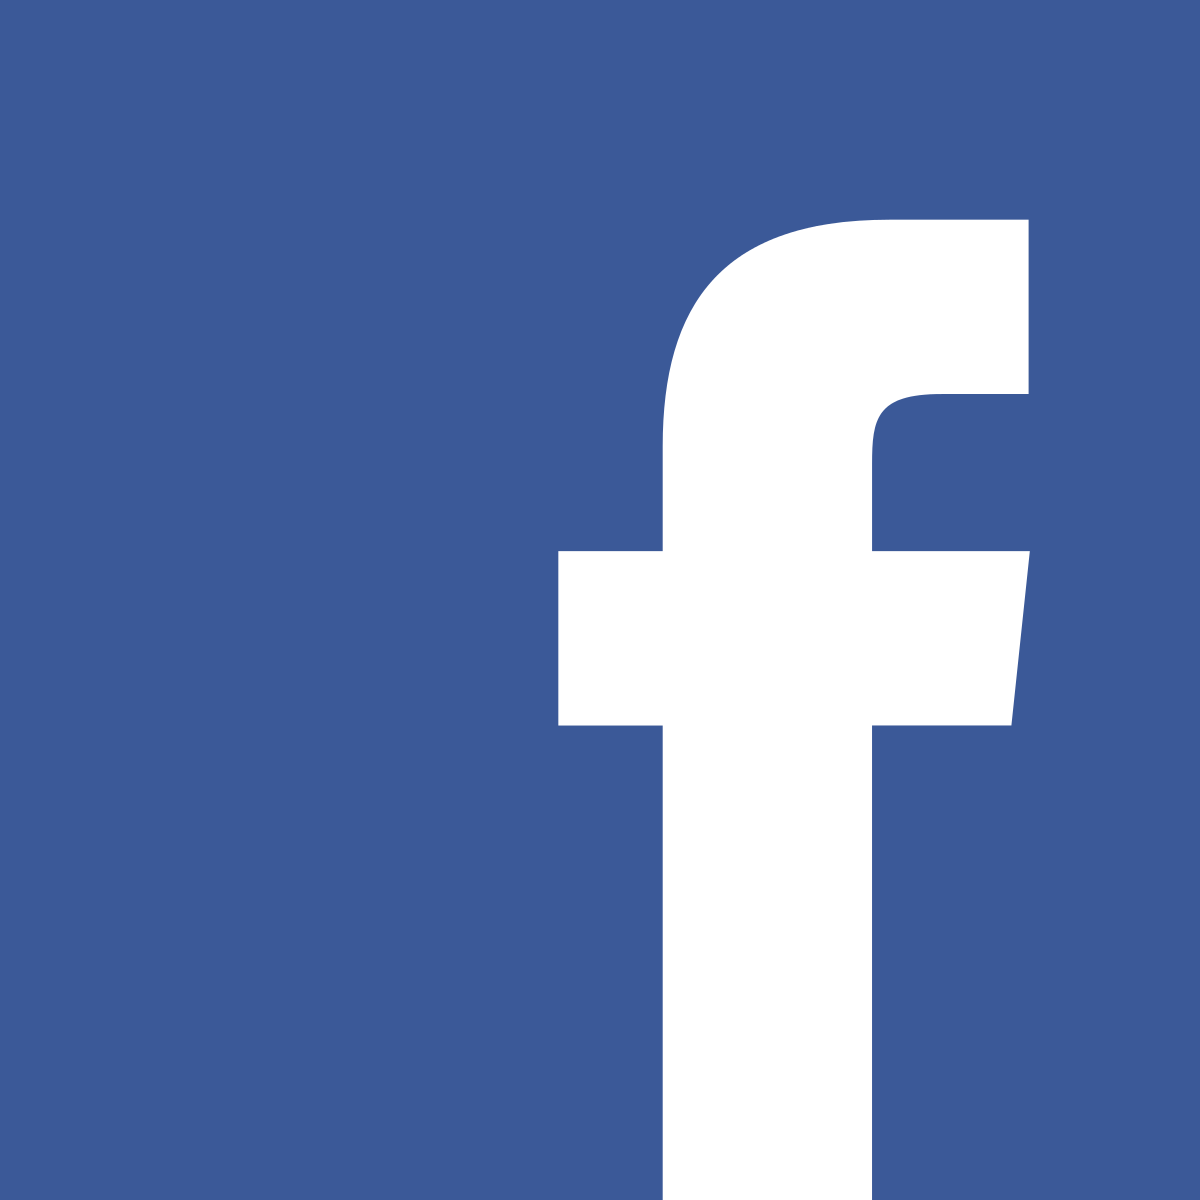 Facebook 站外動態工具讓使用者控制要讓臉書收集那些隱私資料